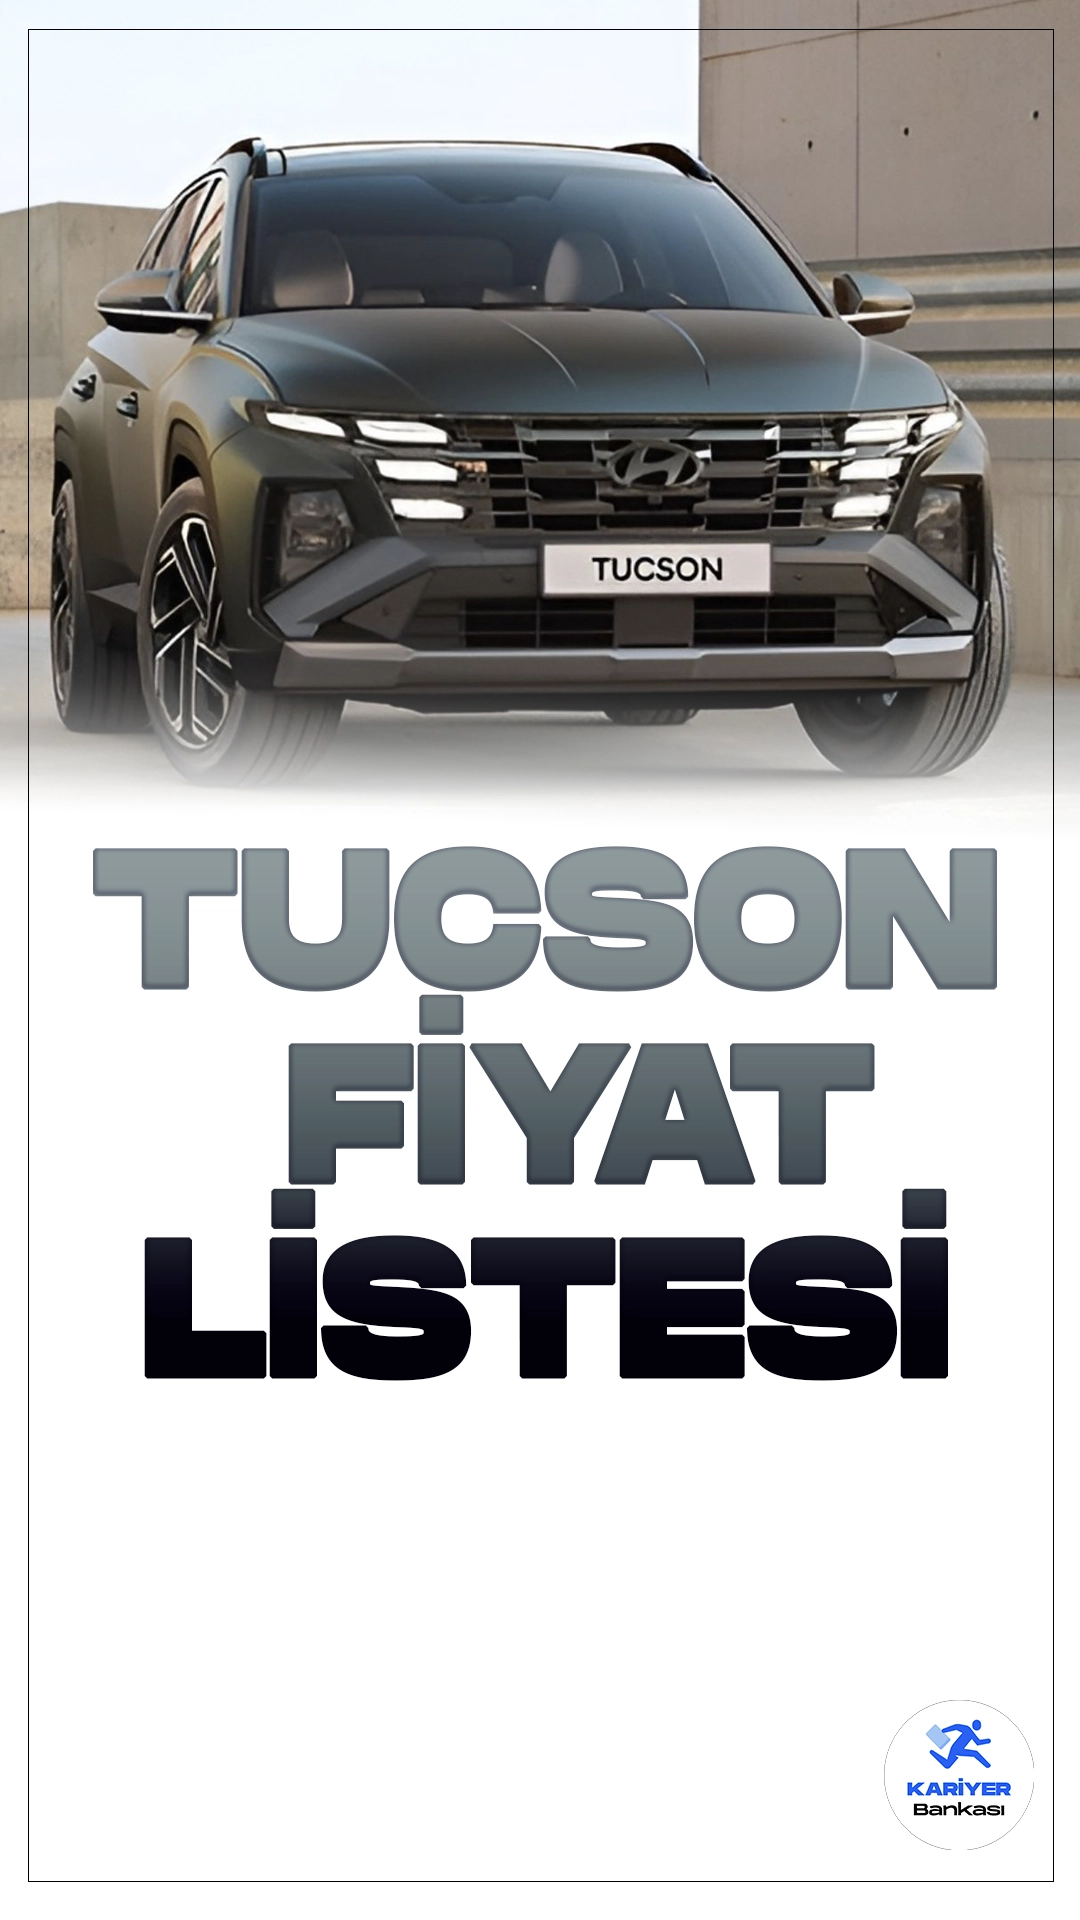 Hyundai Tucson Nisan 2024 Fiyat Listesi Yayımlandı.Hyundai, otomotiv endüstrisindeki etkileyici varlığını güncellenmiş Tucson modeliyle bir kez daha kanıtlıyor. Yeni Tucson, zarif ve dinamik tasarımıyla dikkat çekerken, güçlü performansıyla da sürücüleri etkisi altına alıyor.